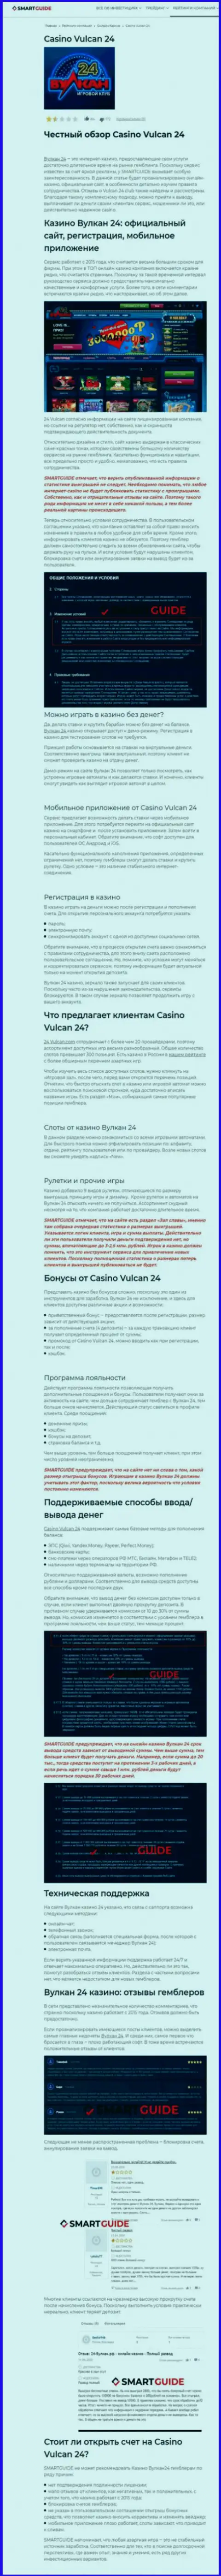 Вулкан-24 Ком - это контора, которая зарабатывает на грабеже финансовых активов клиентов (обзор неправомерных деяний)